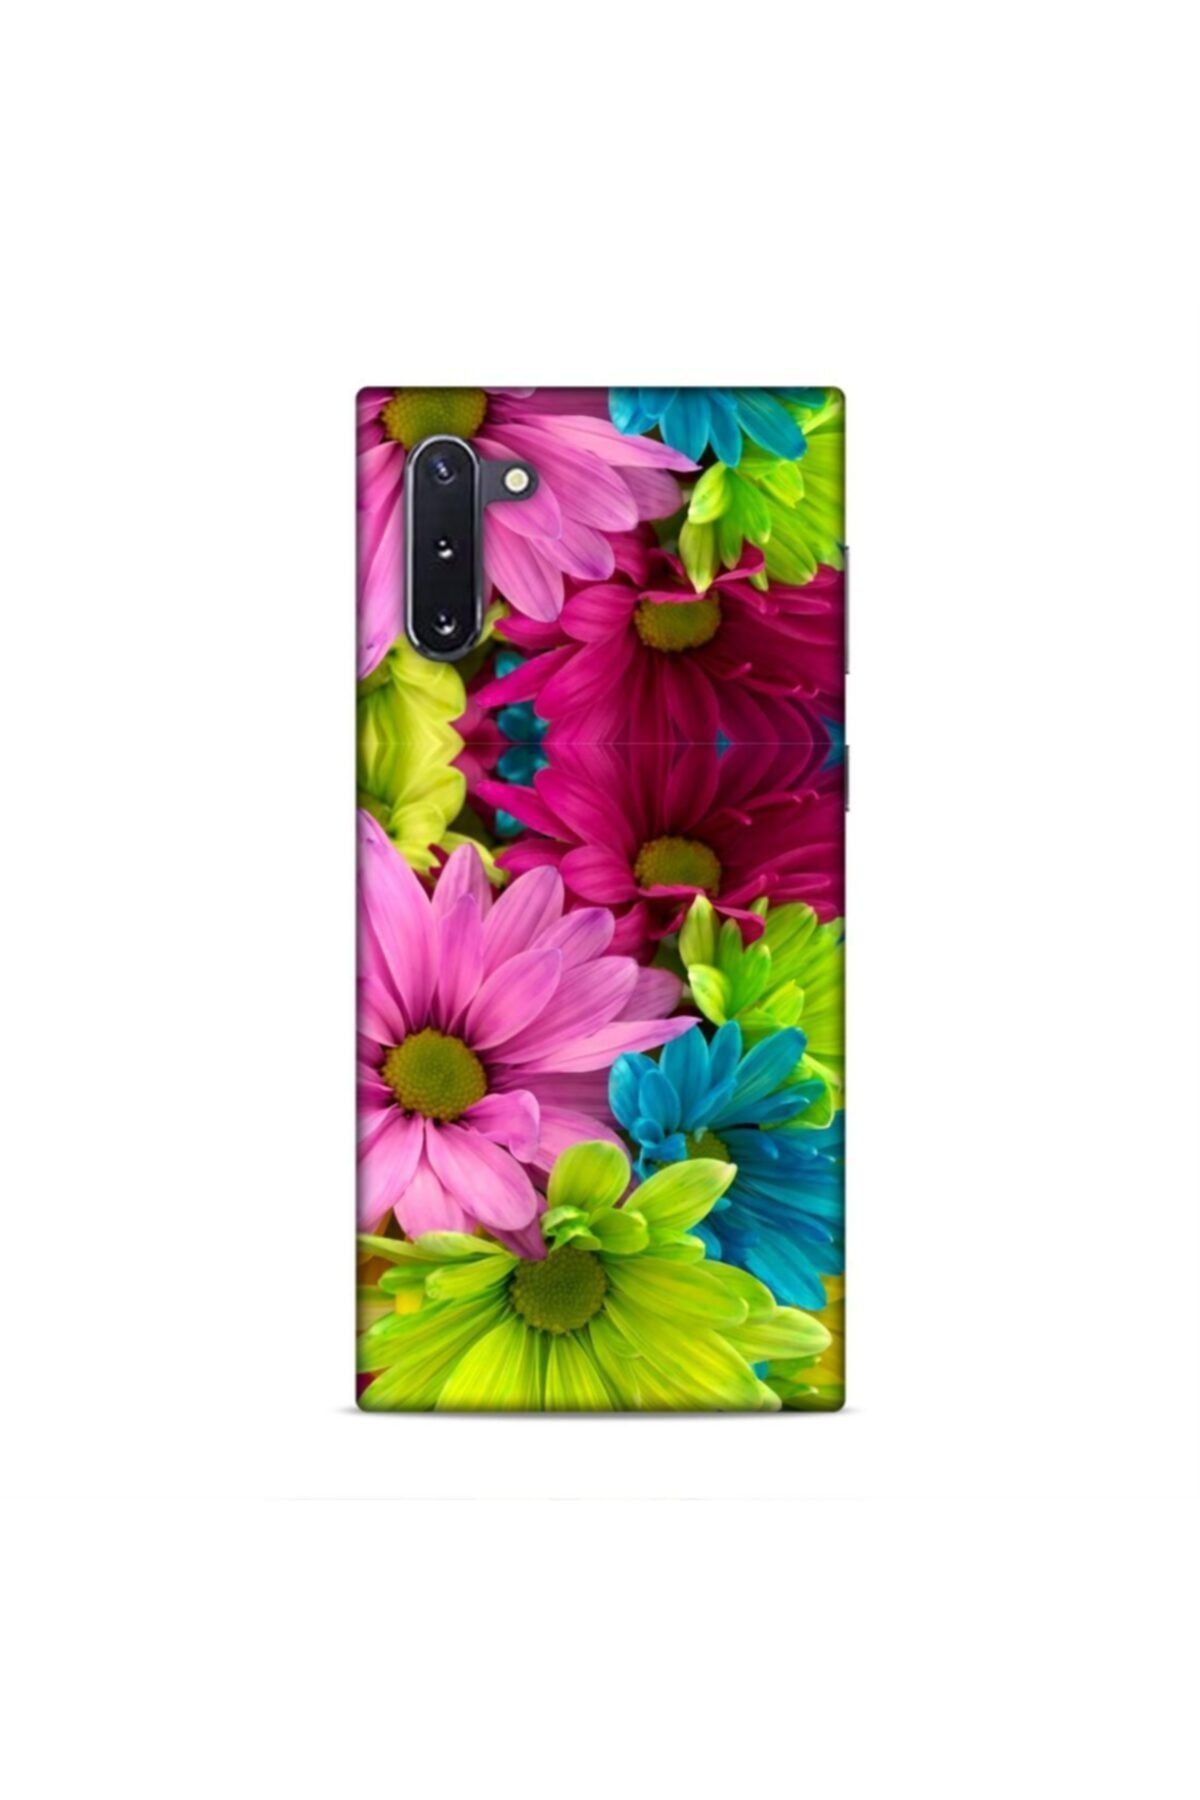 Pickcase Samsung Galaxy Note 10 Kılıf Desenli Arka Kapak Renkli Çiçekler